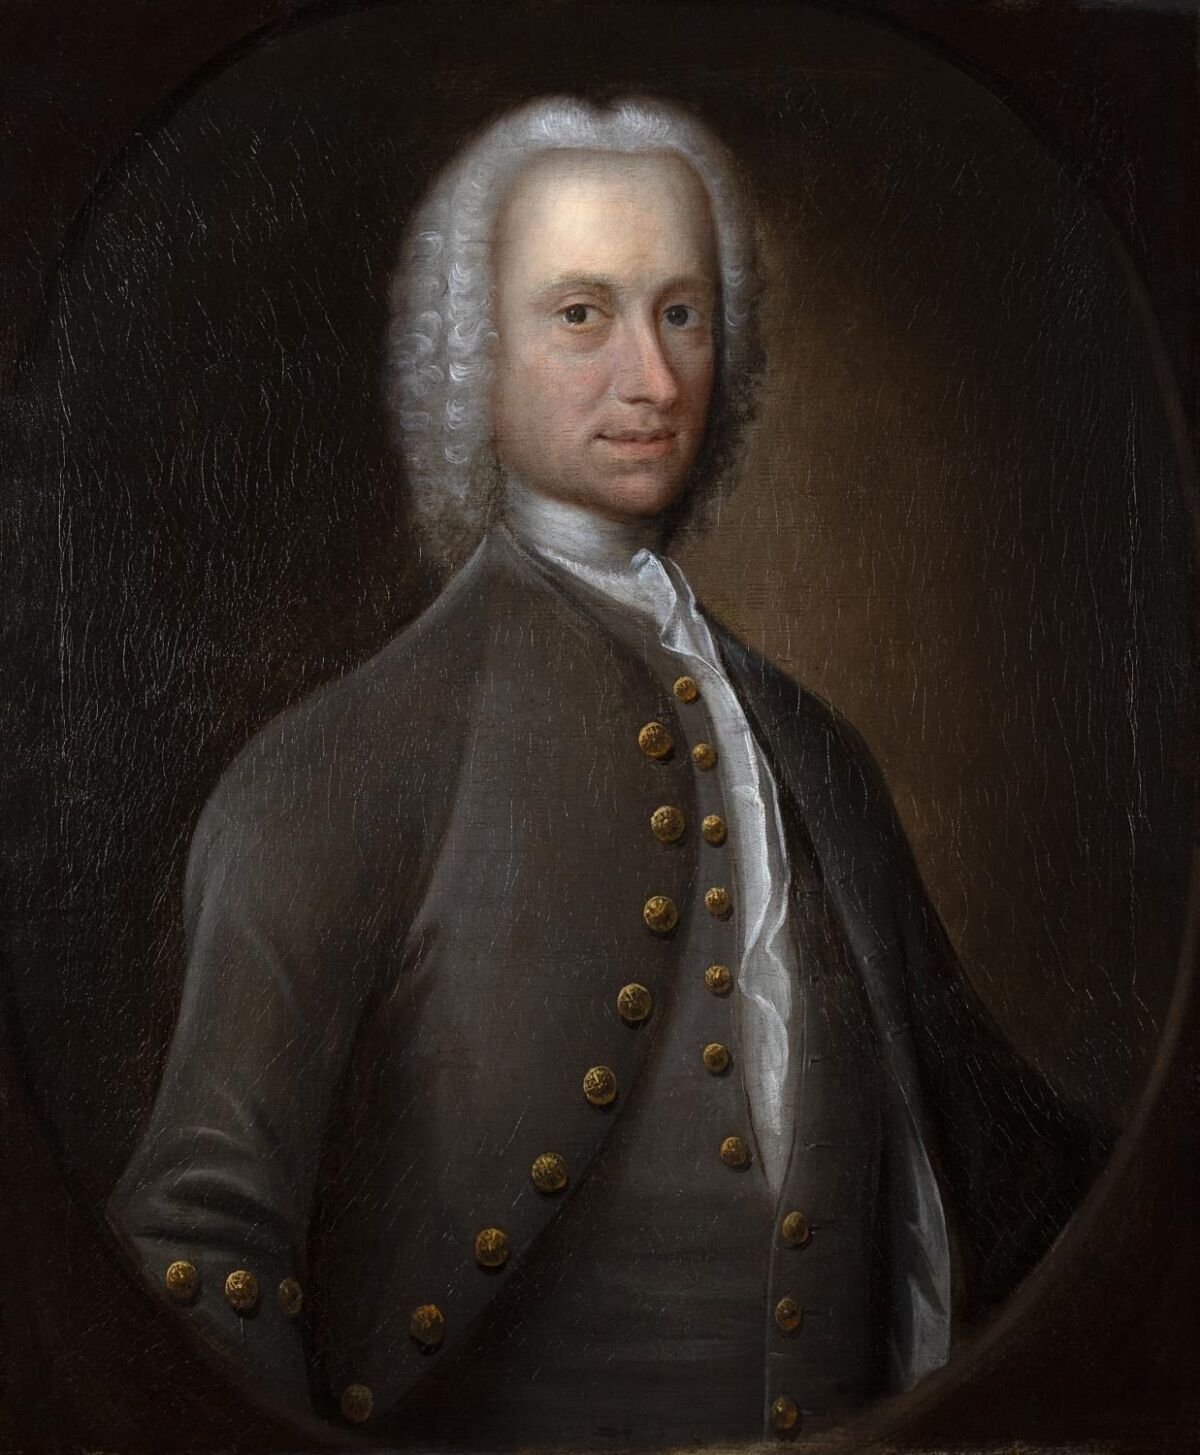 Mann i 1700-bekledning og parykk. Foto av maleri.